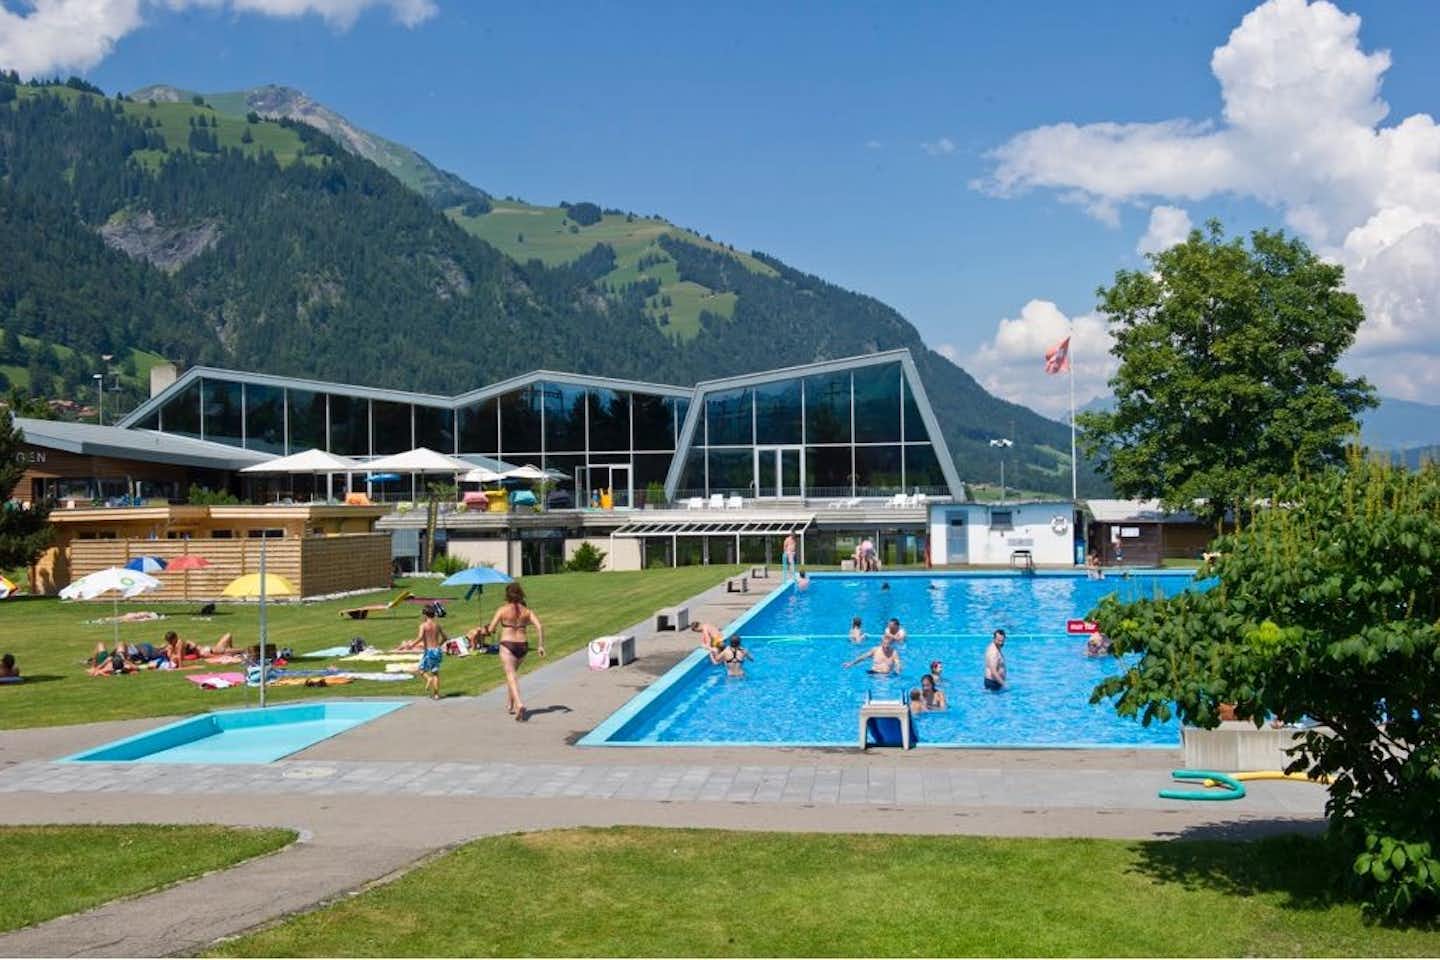 Frutigresort  -  Pool vom Campingplatz mit Liegewiese und Blick auf die Alpen